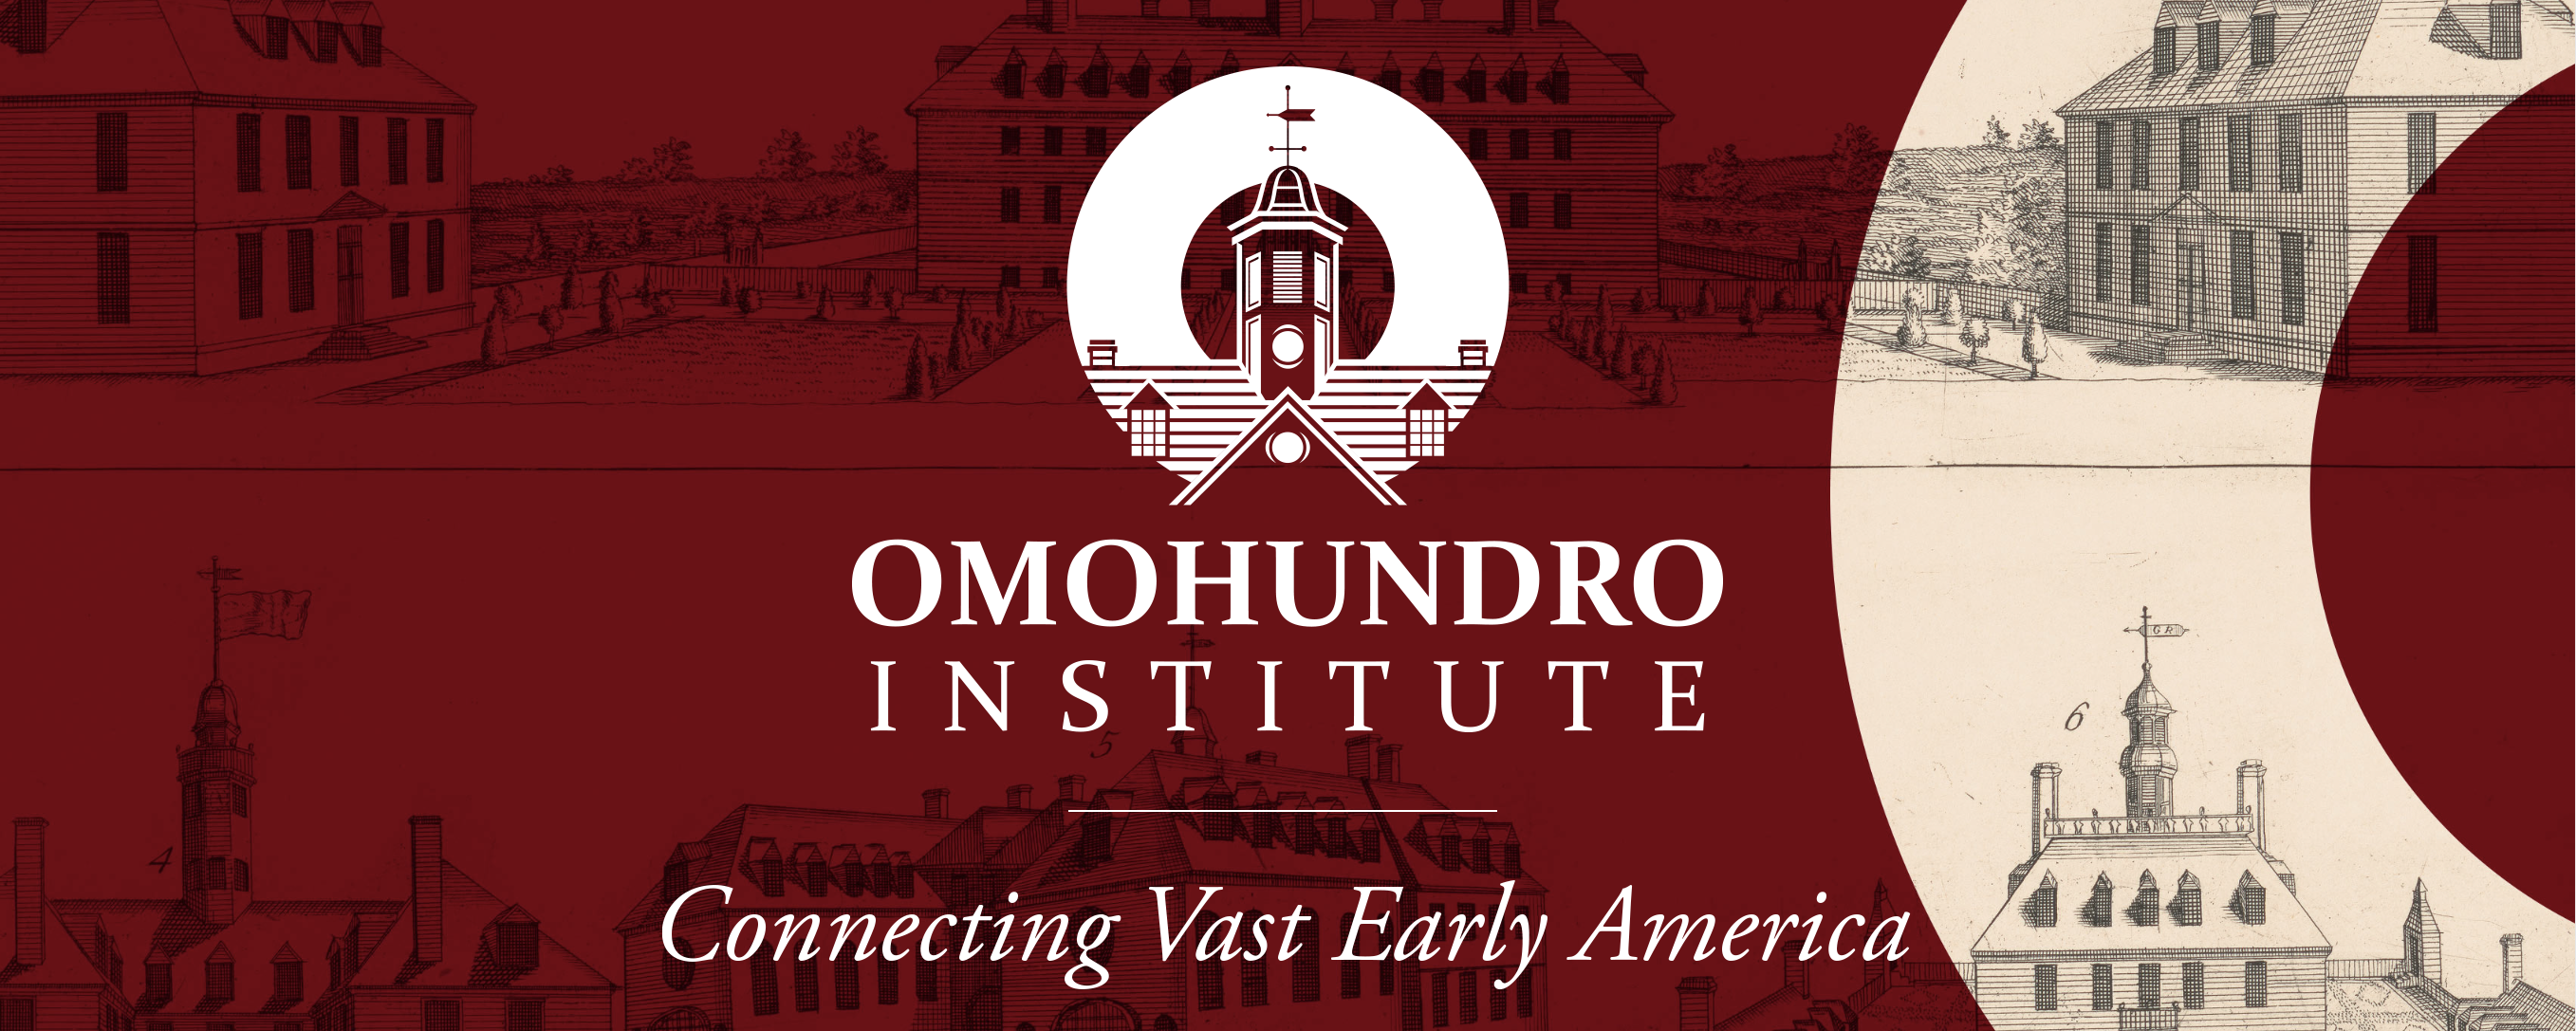 Omohundro Institute website